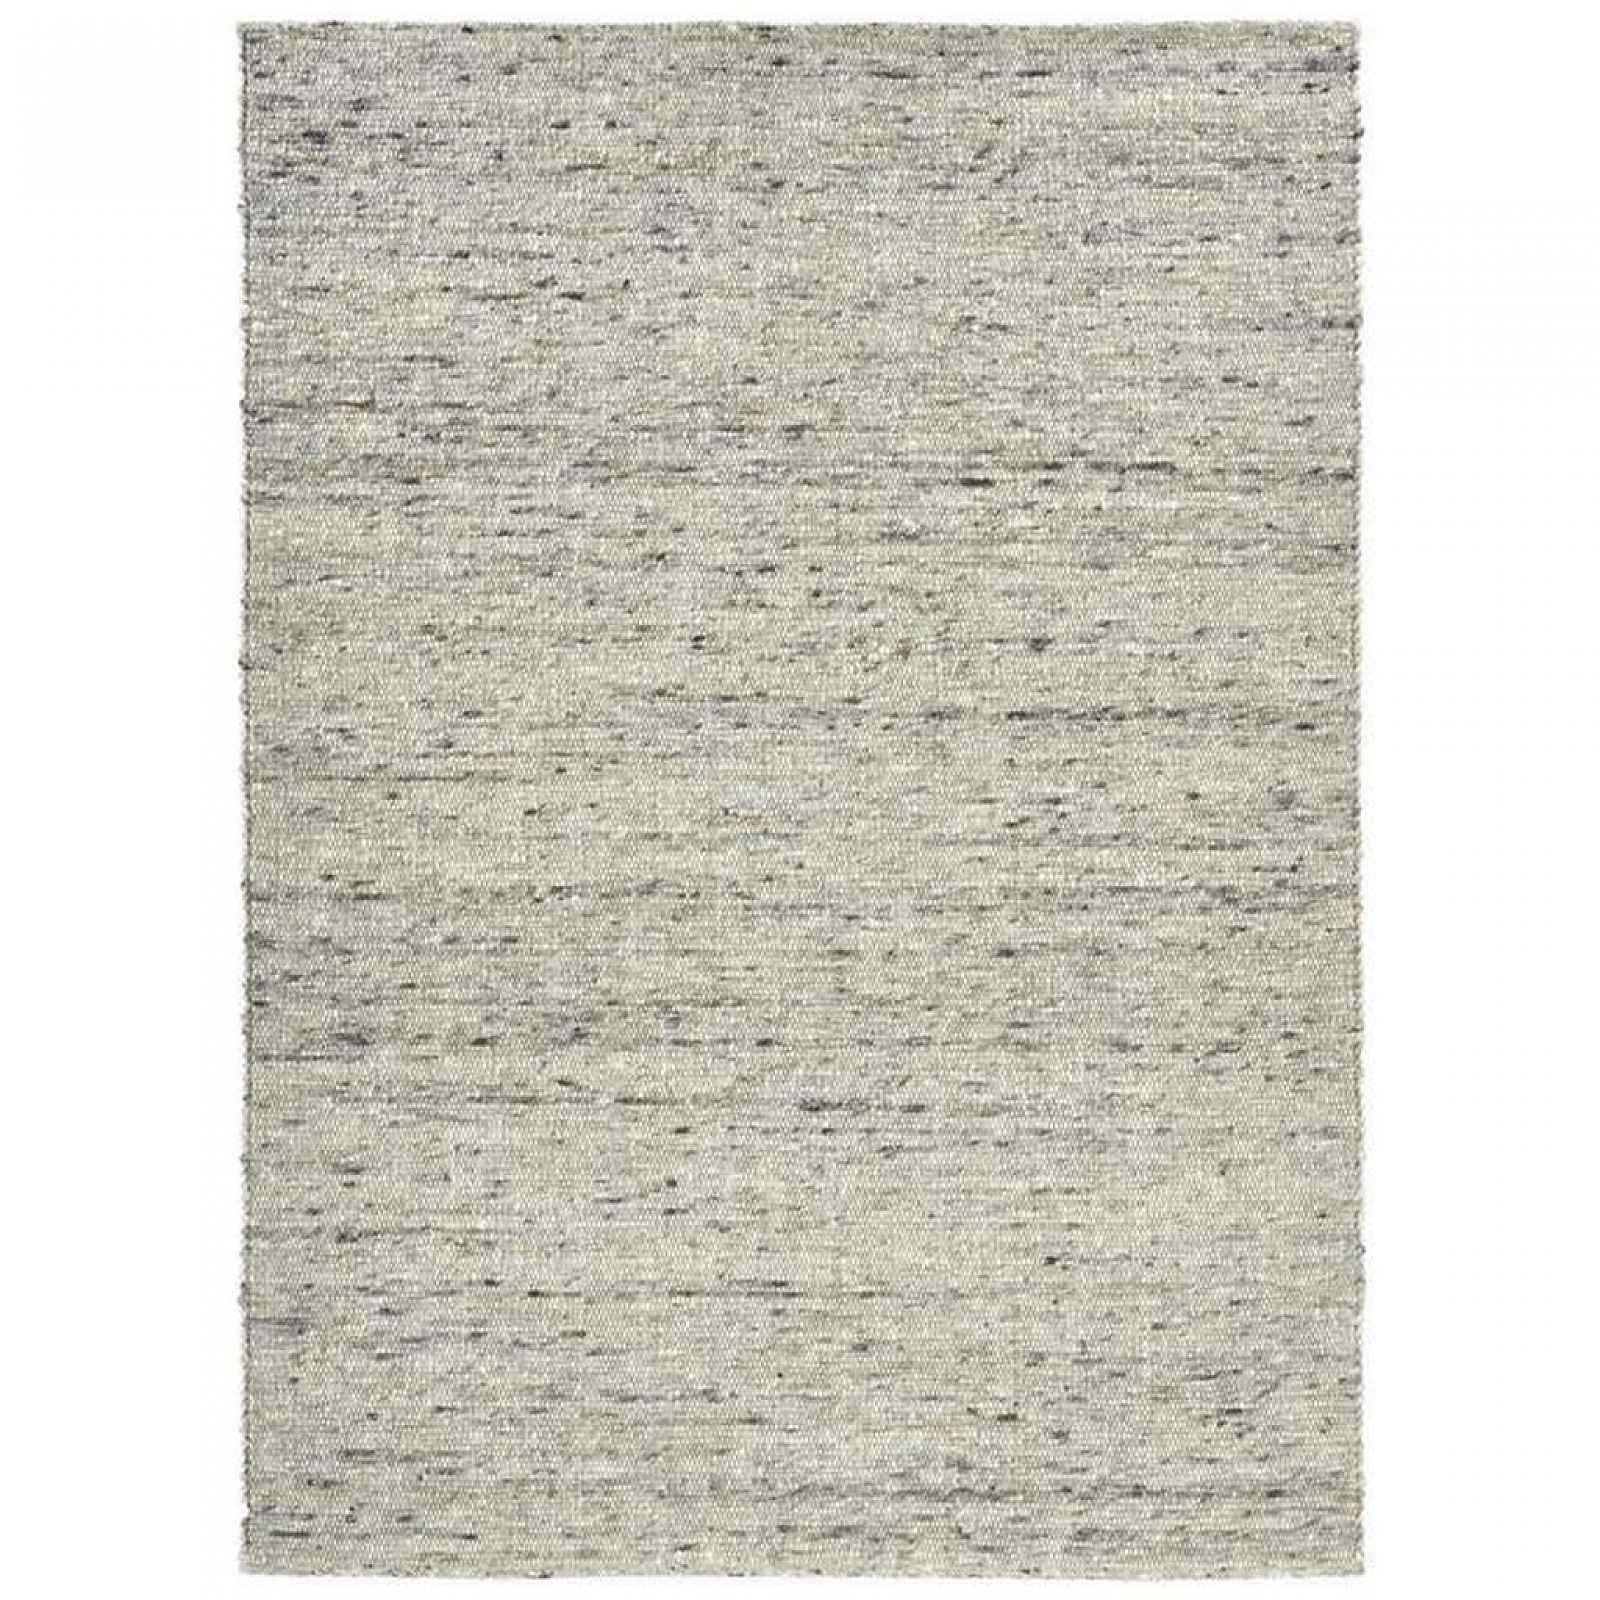 XXXLutz RUČNĚ TKANÝ KOBEREC, 170/230 cm, šedá, černá Linea Natura - Vlněné koberce - 003166013667